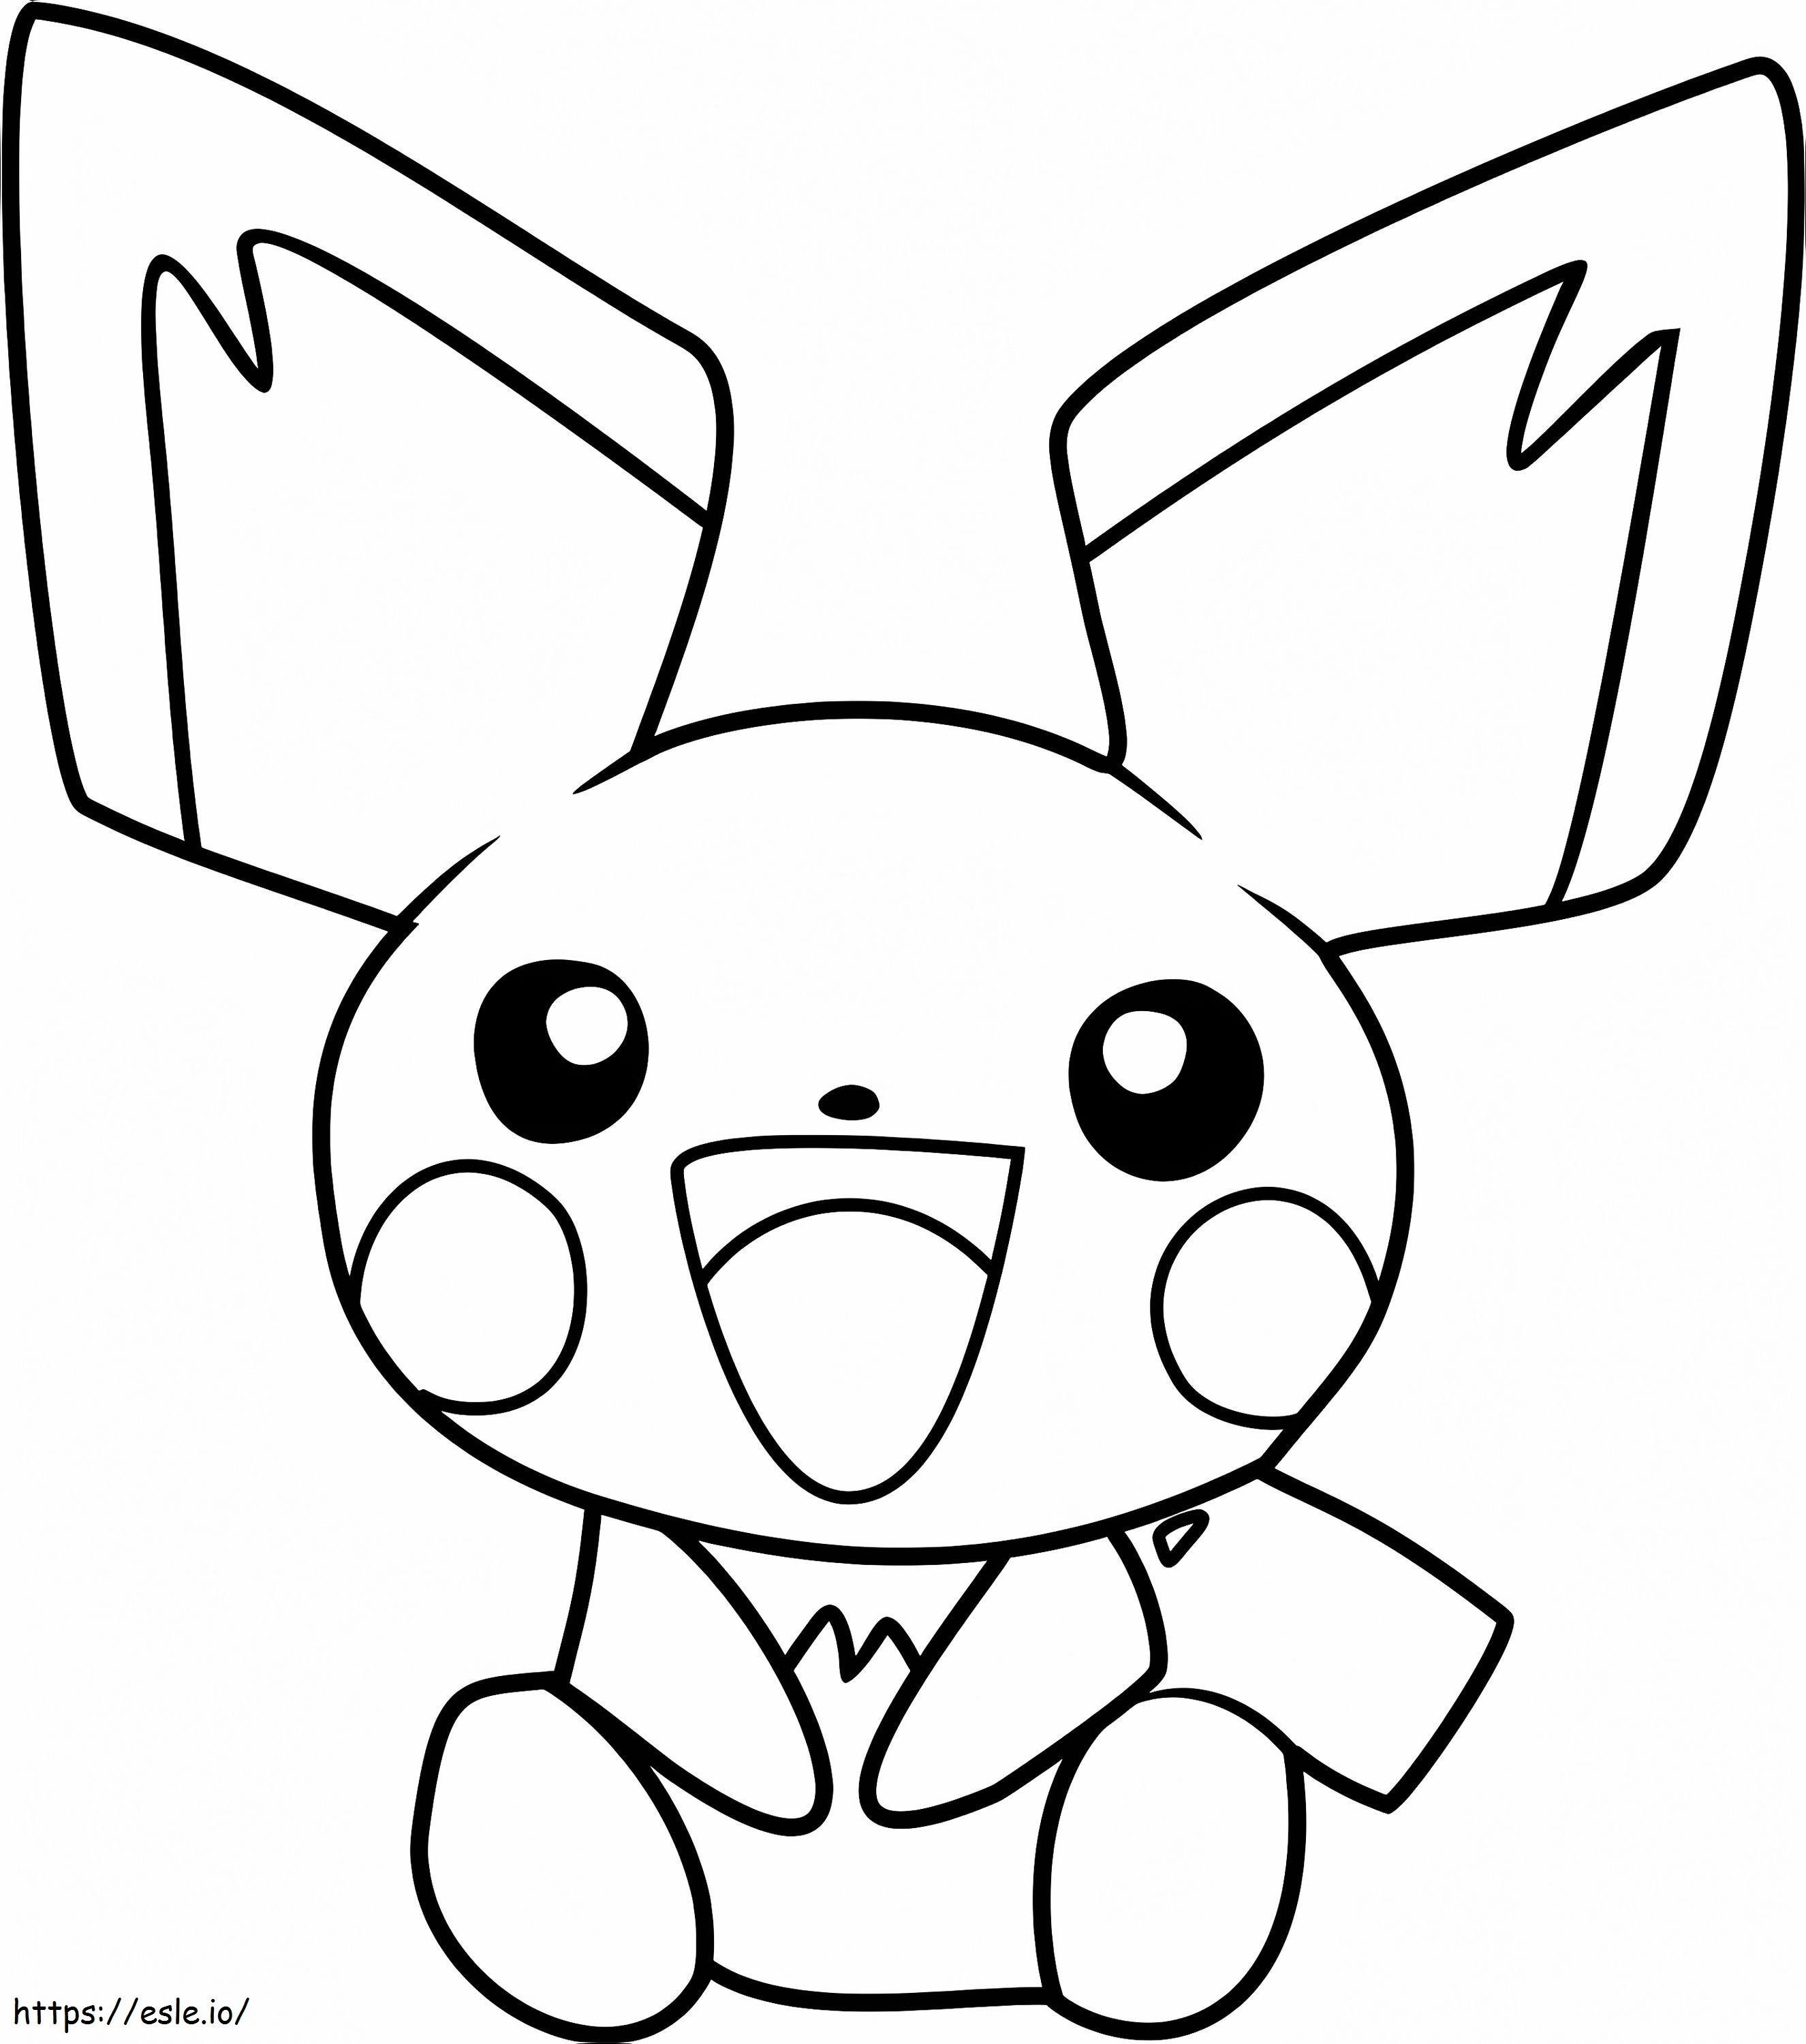 Coloriage 1531968485 Joyeux Pichu Pokémon A4 à imprimer dessin